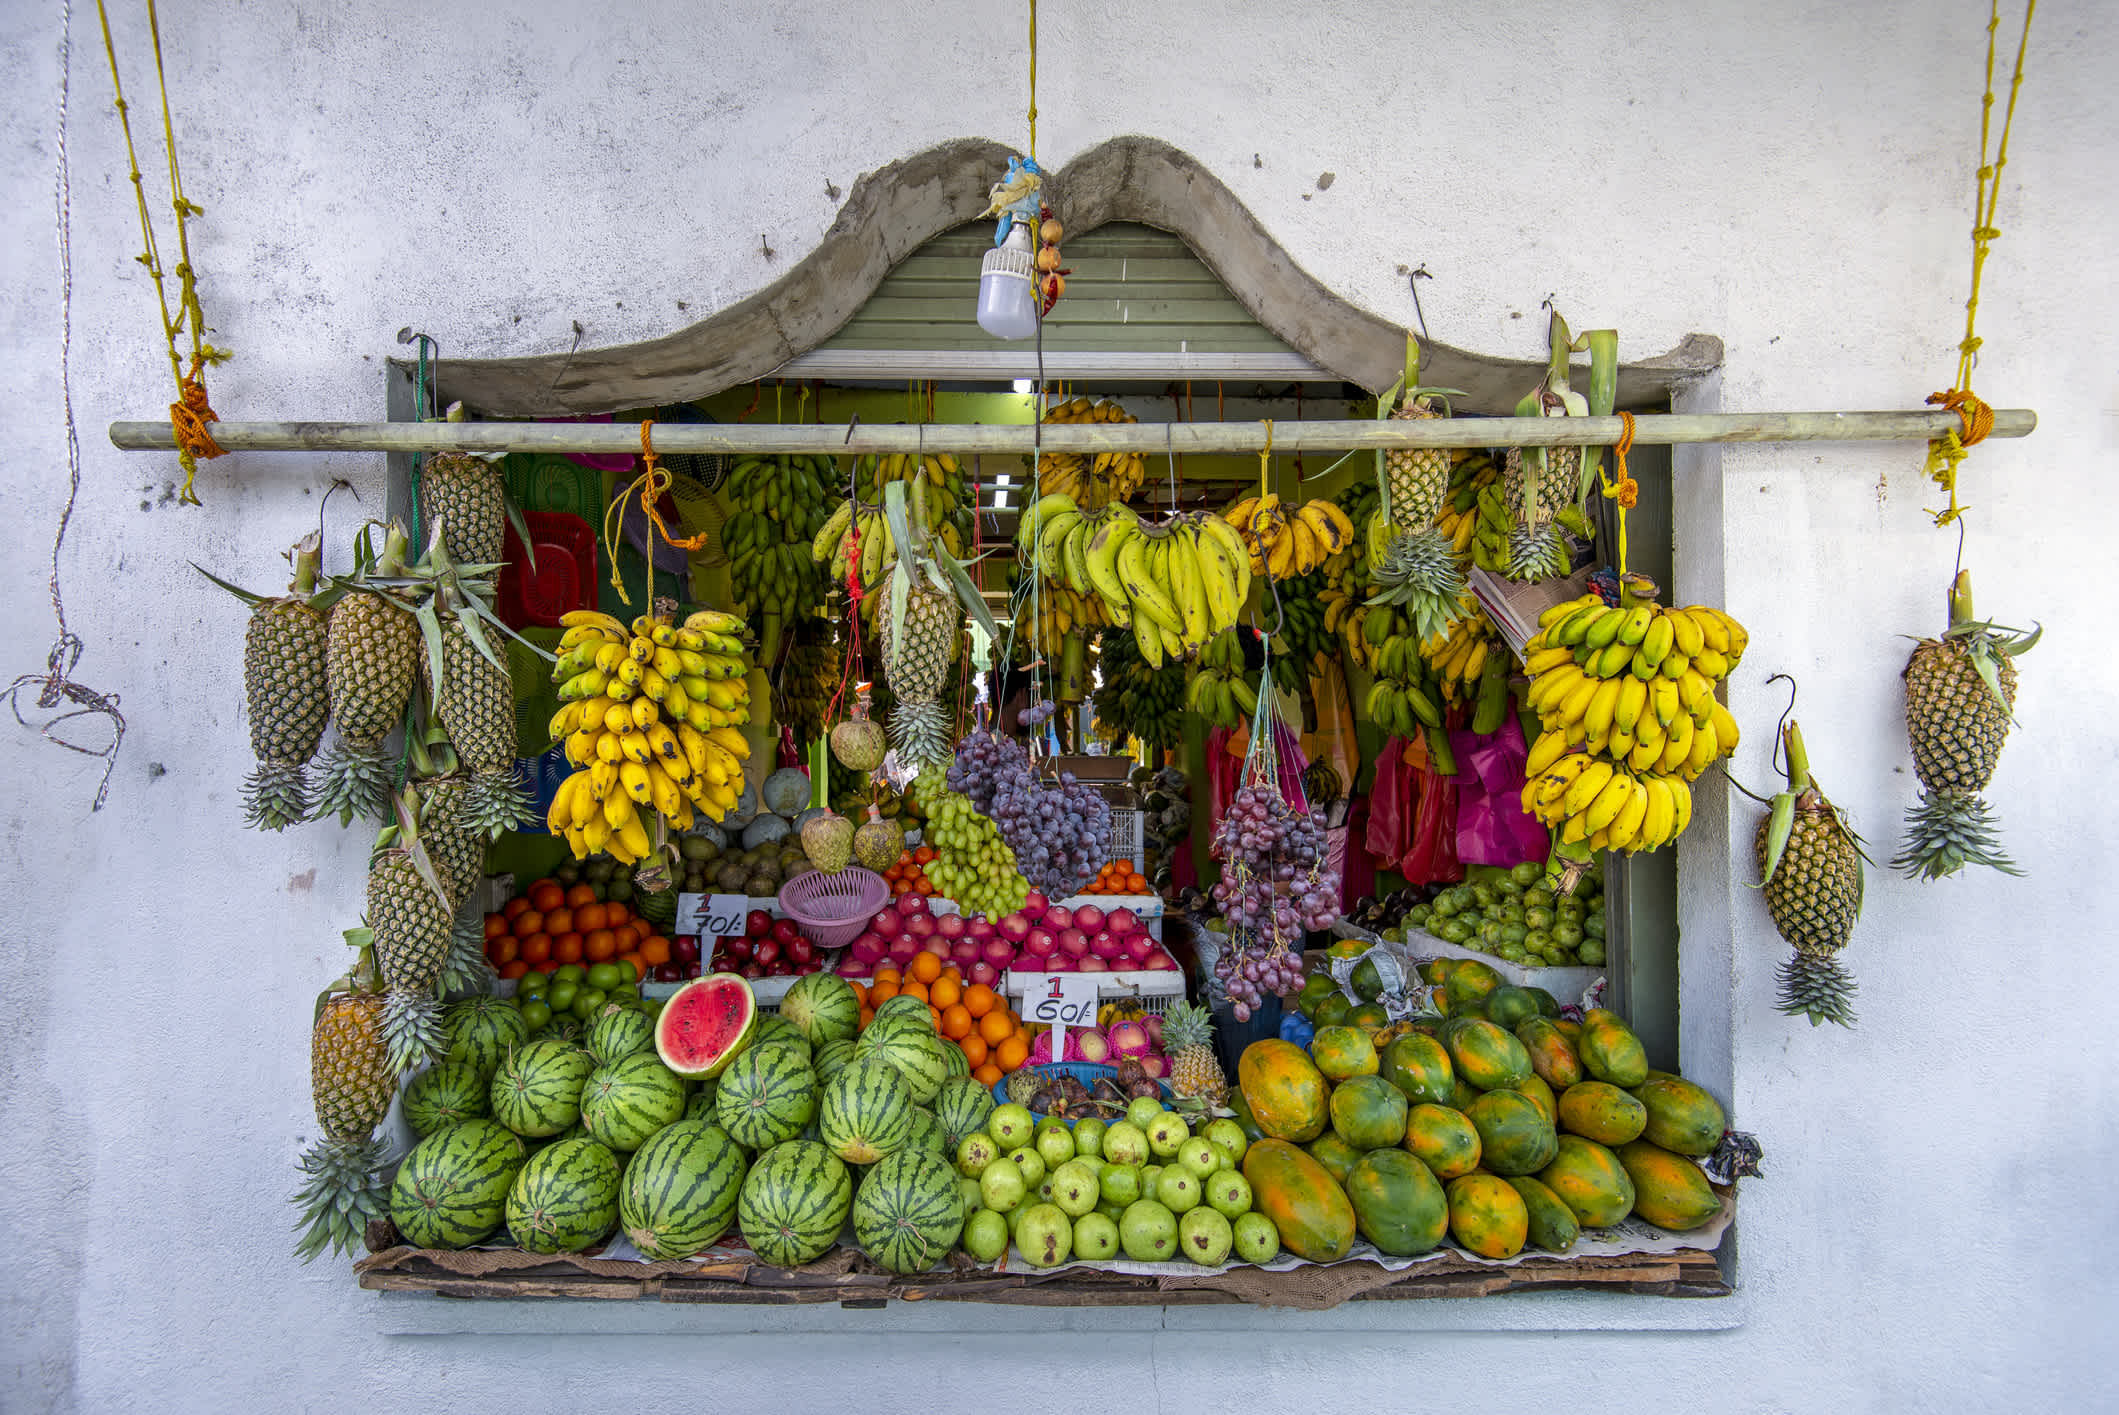 Große Auswahl an Früchten auf einem Obstmarkt